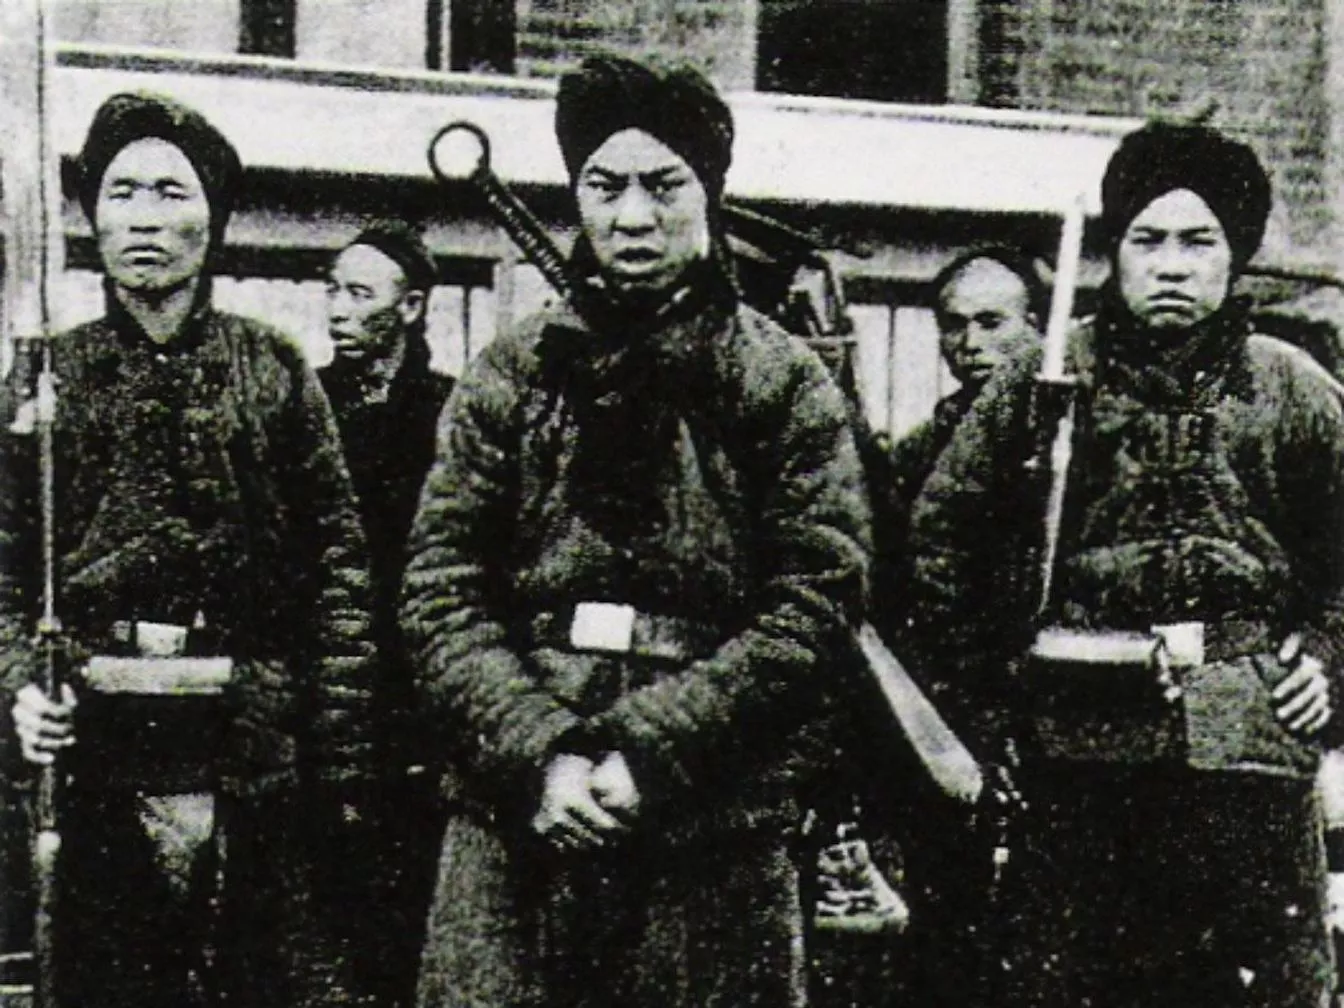 Soldats bòxers en una fotografia de l'any 1900